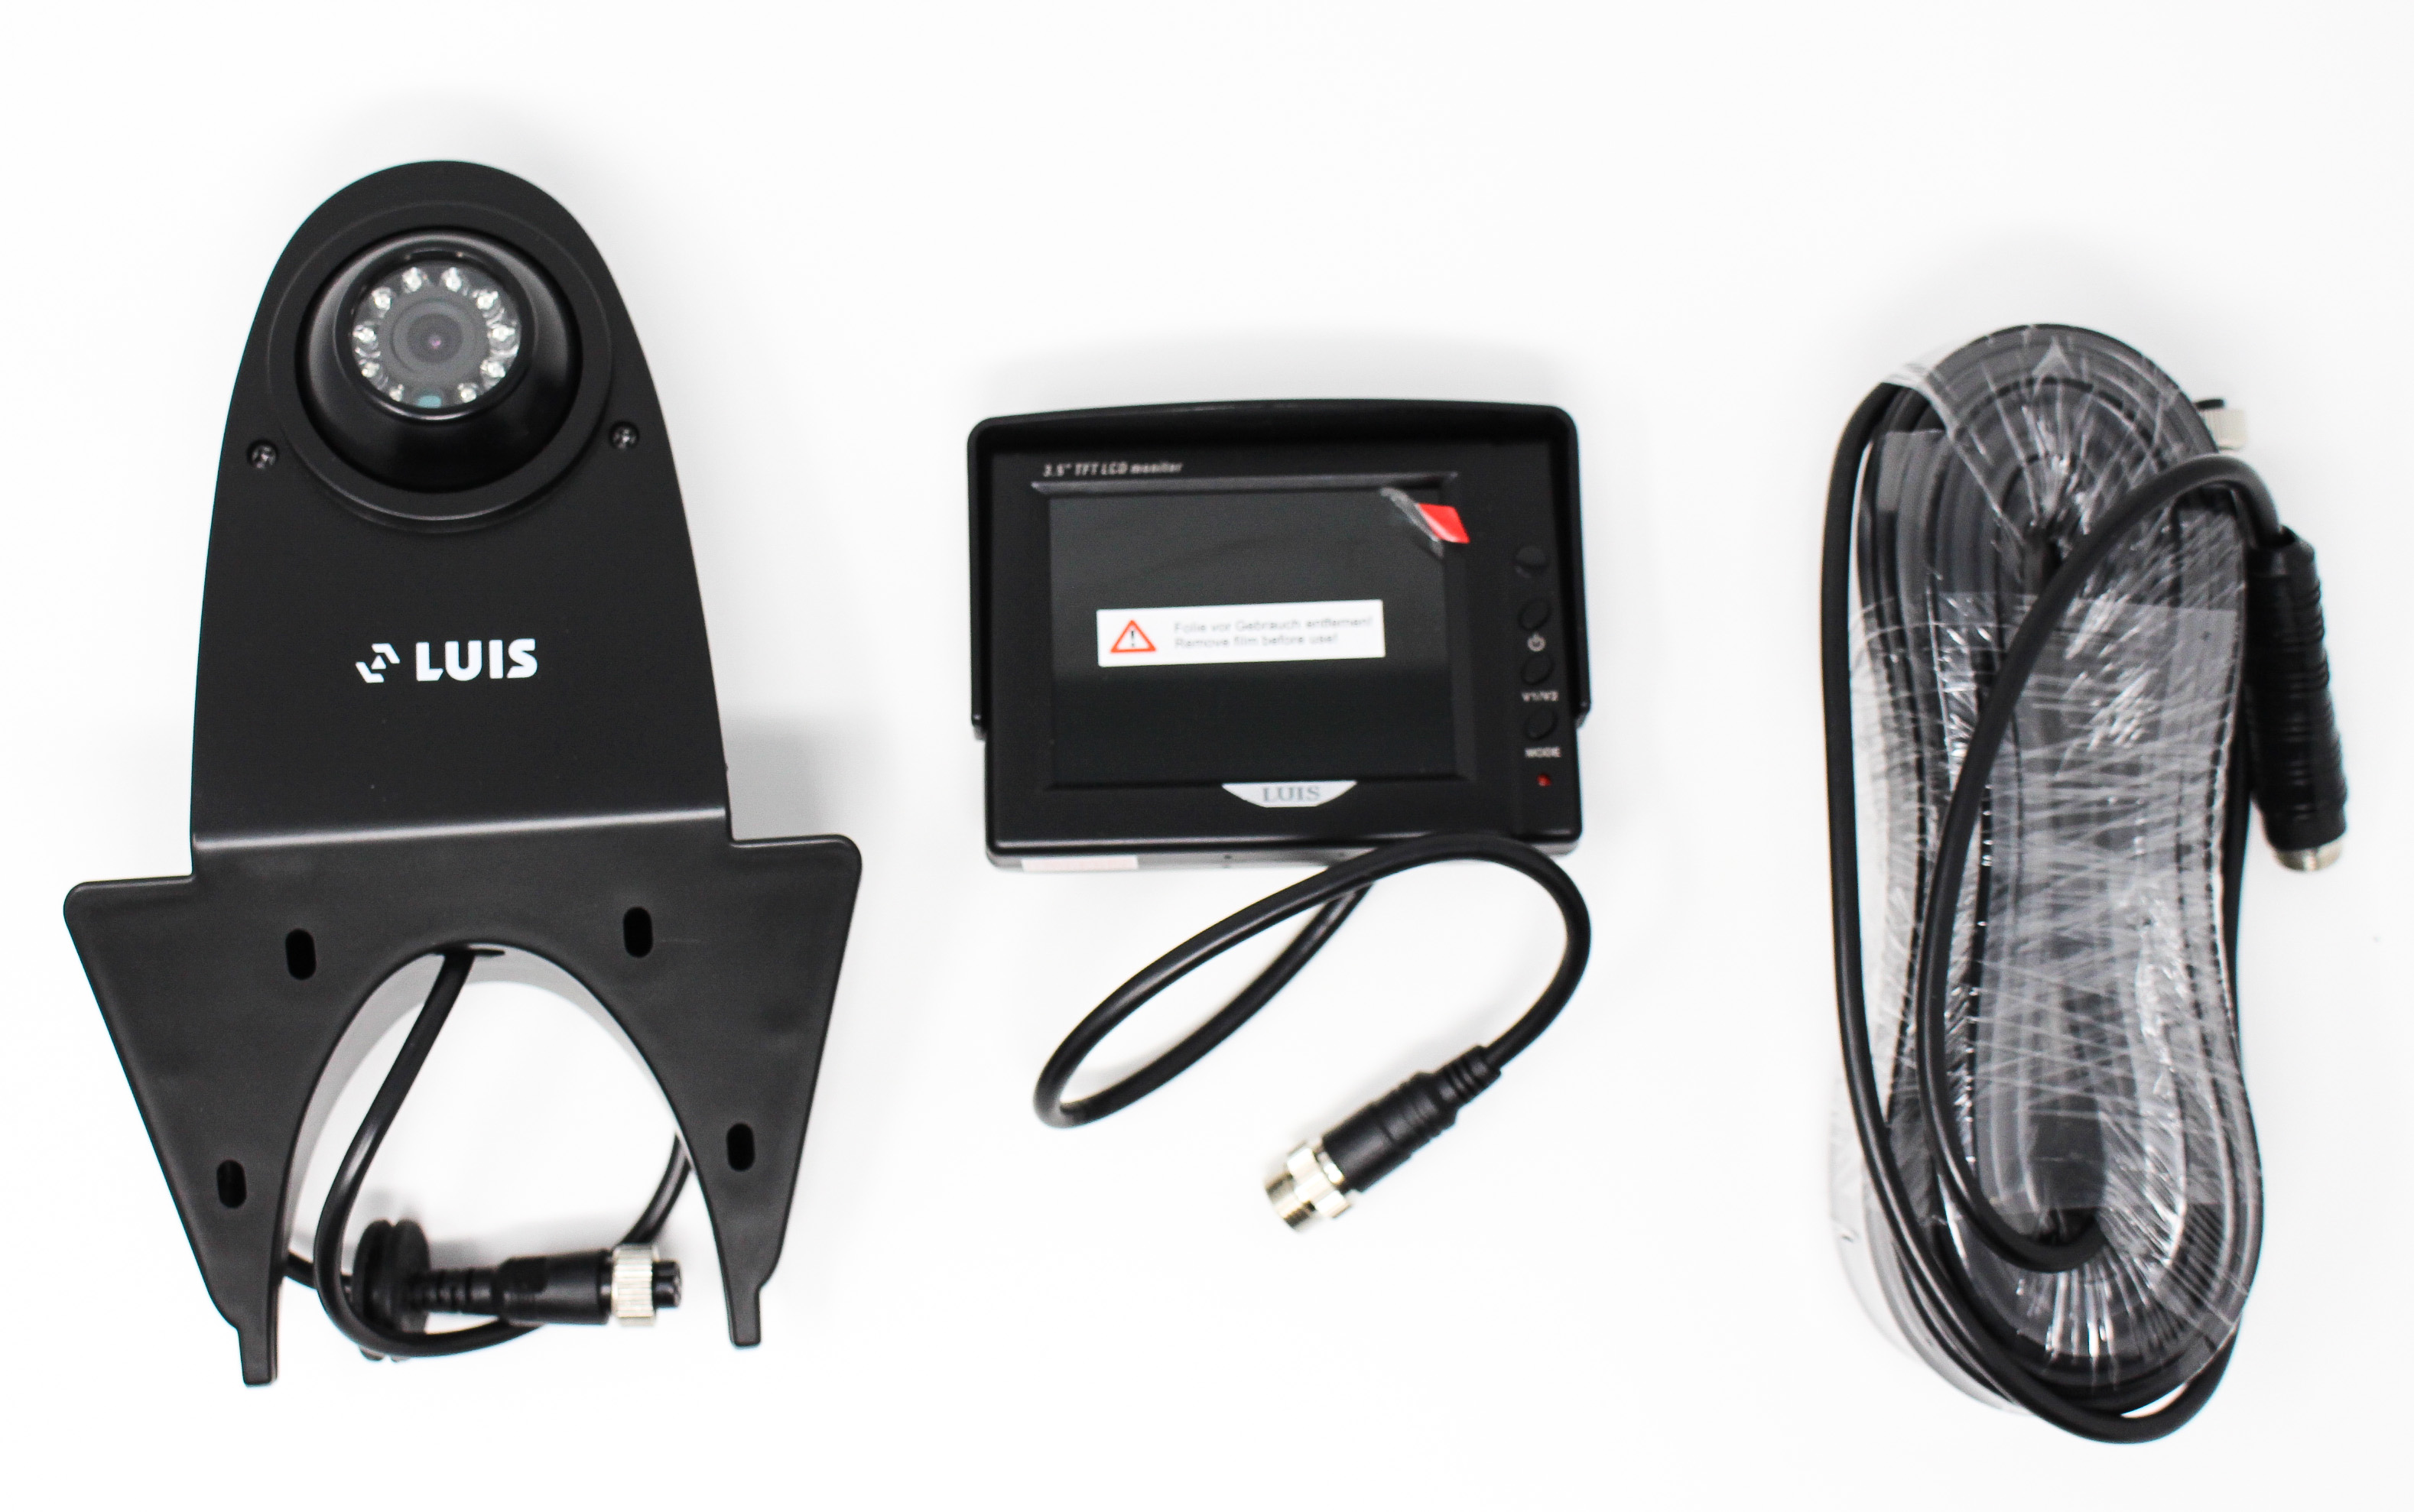 schwarz Rangierhilfe inkl Rückfahrkamera und Monitor LUIS RV-8 Rückfahr-Kamera System für Kleintransporter 